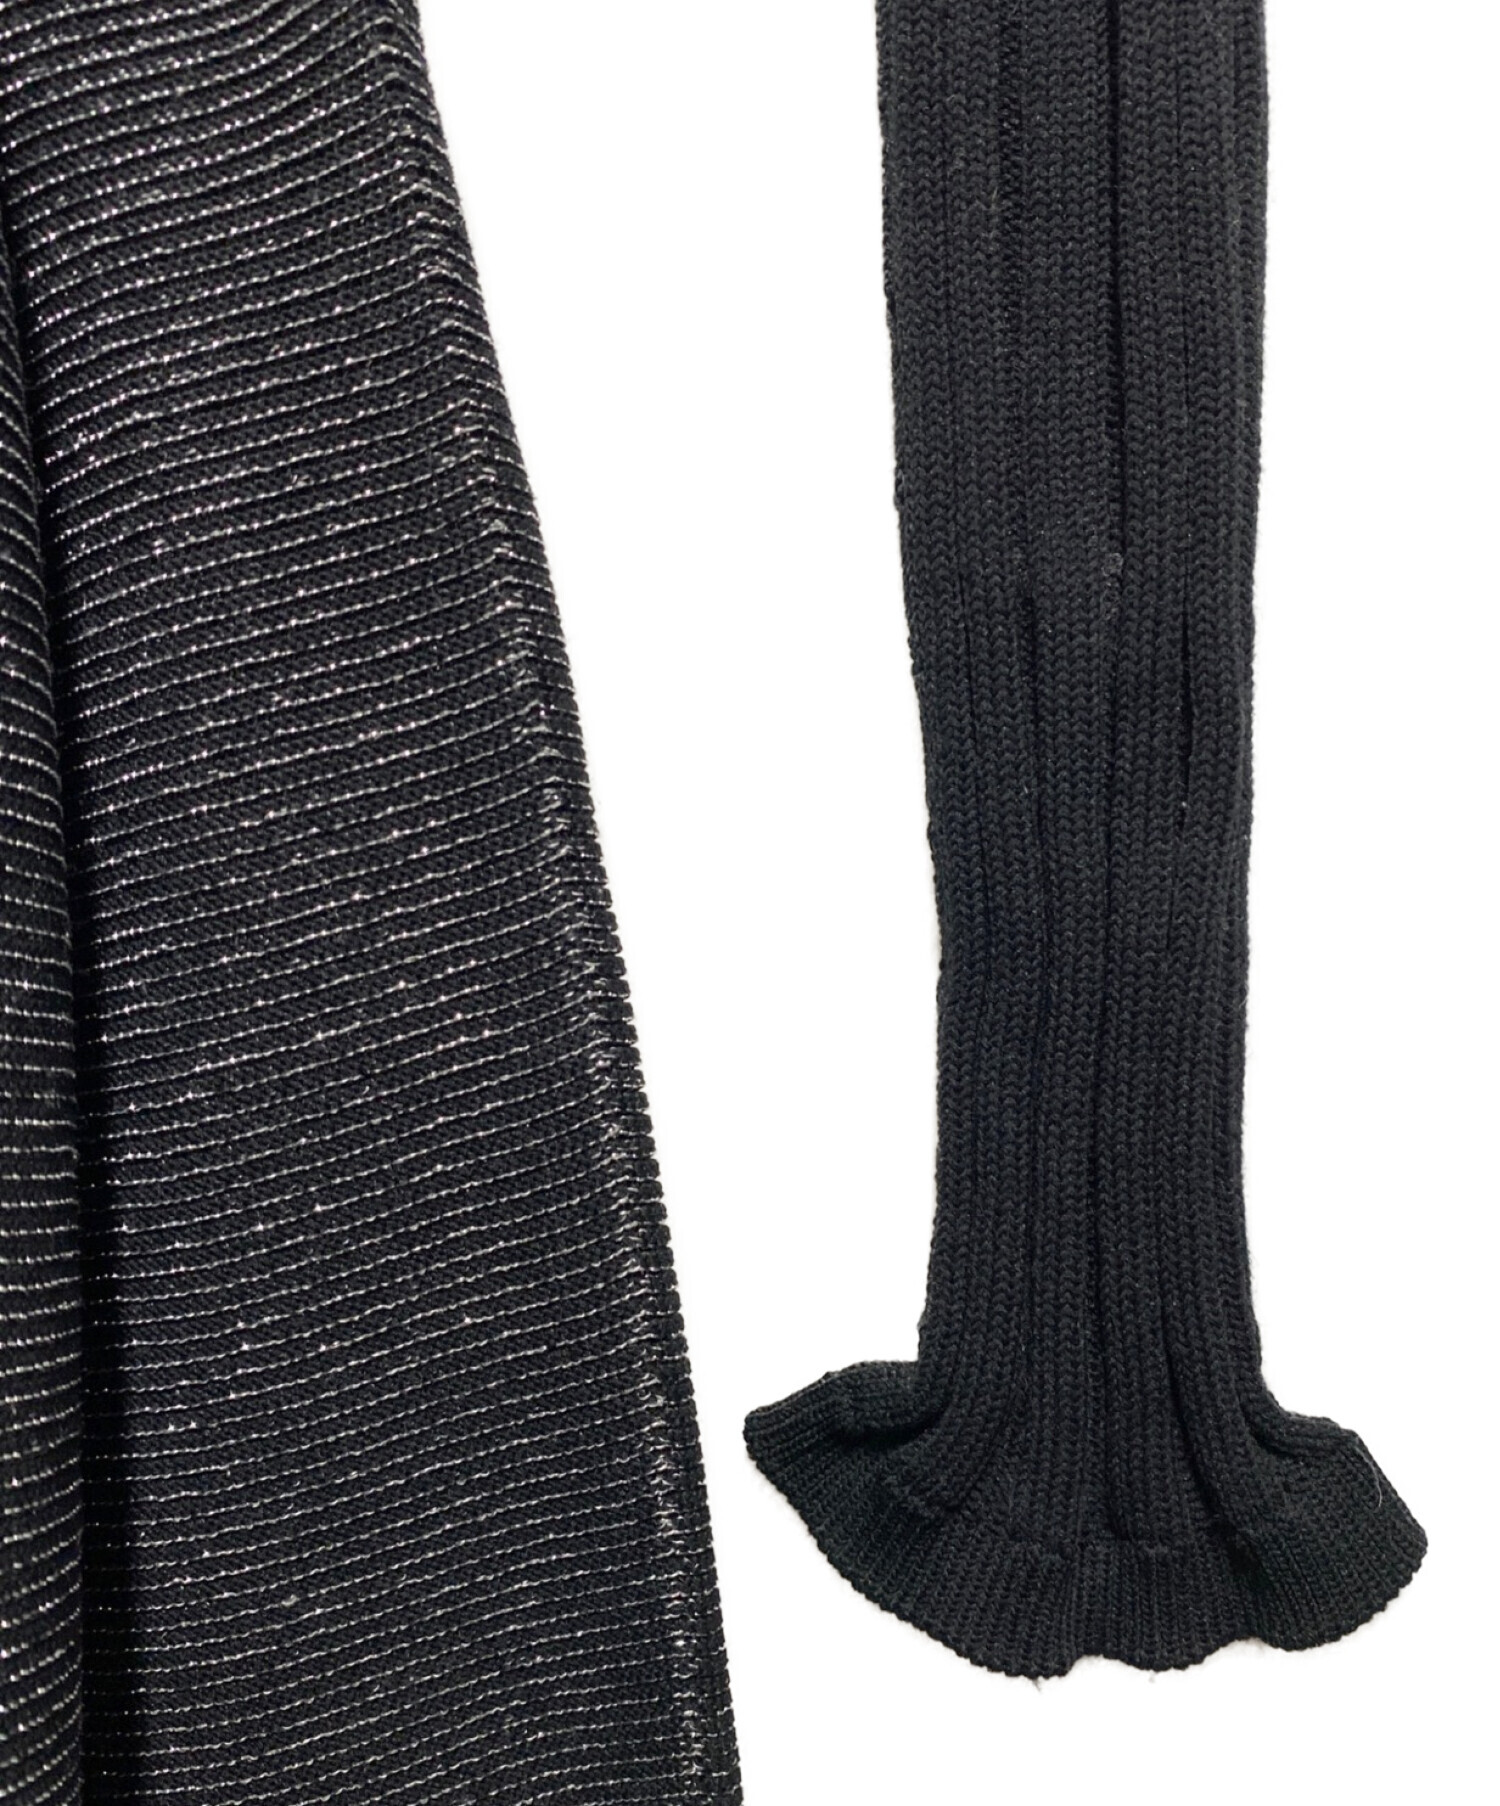 CFCL (シーエフシーエル) POTTERY DRESS 2 GLITTER ブラック×グレー サイズ:1